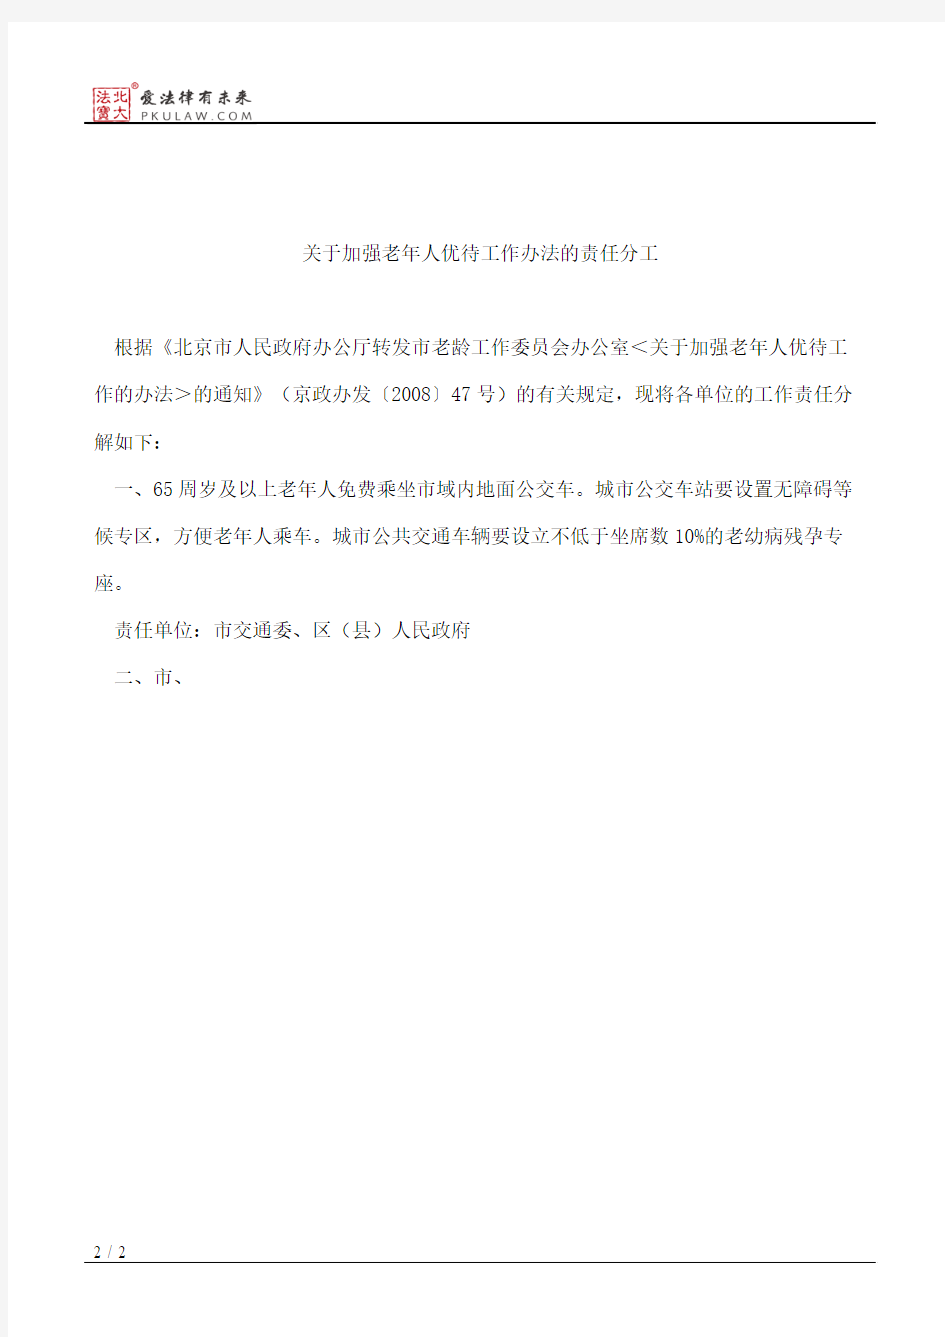 北京市老龄工作委员会办公室印发关于加强老年人优待工作办法责任